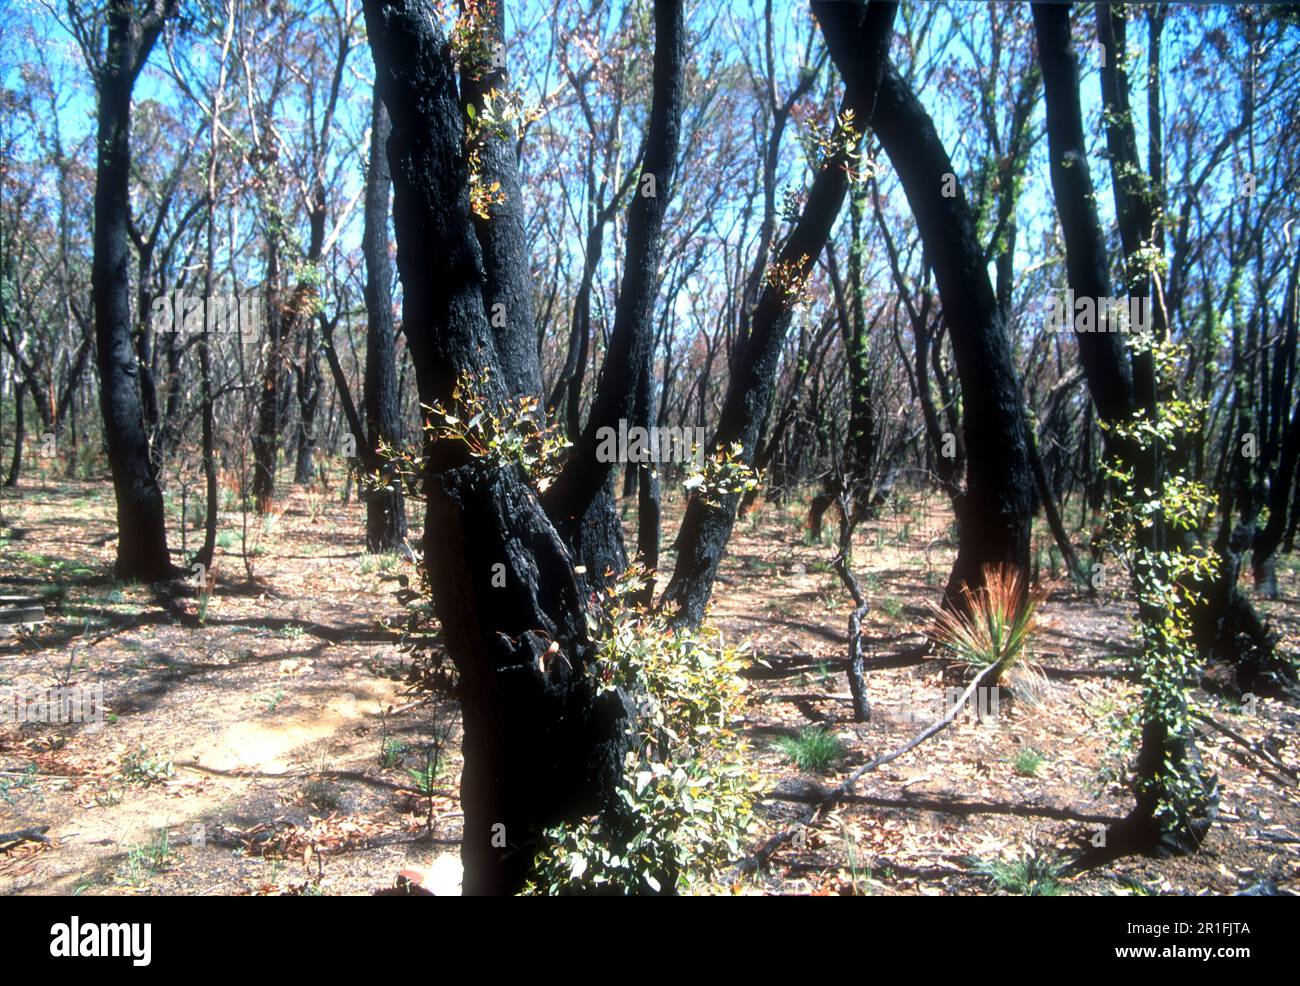 Australische Eukalypten mit grünen Schüssen drei Monate nach einem Buschfeuer Stockfoto